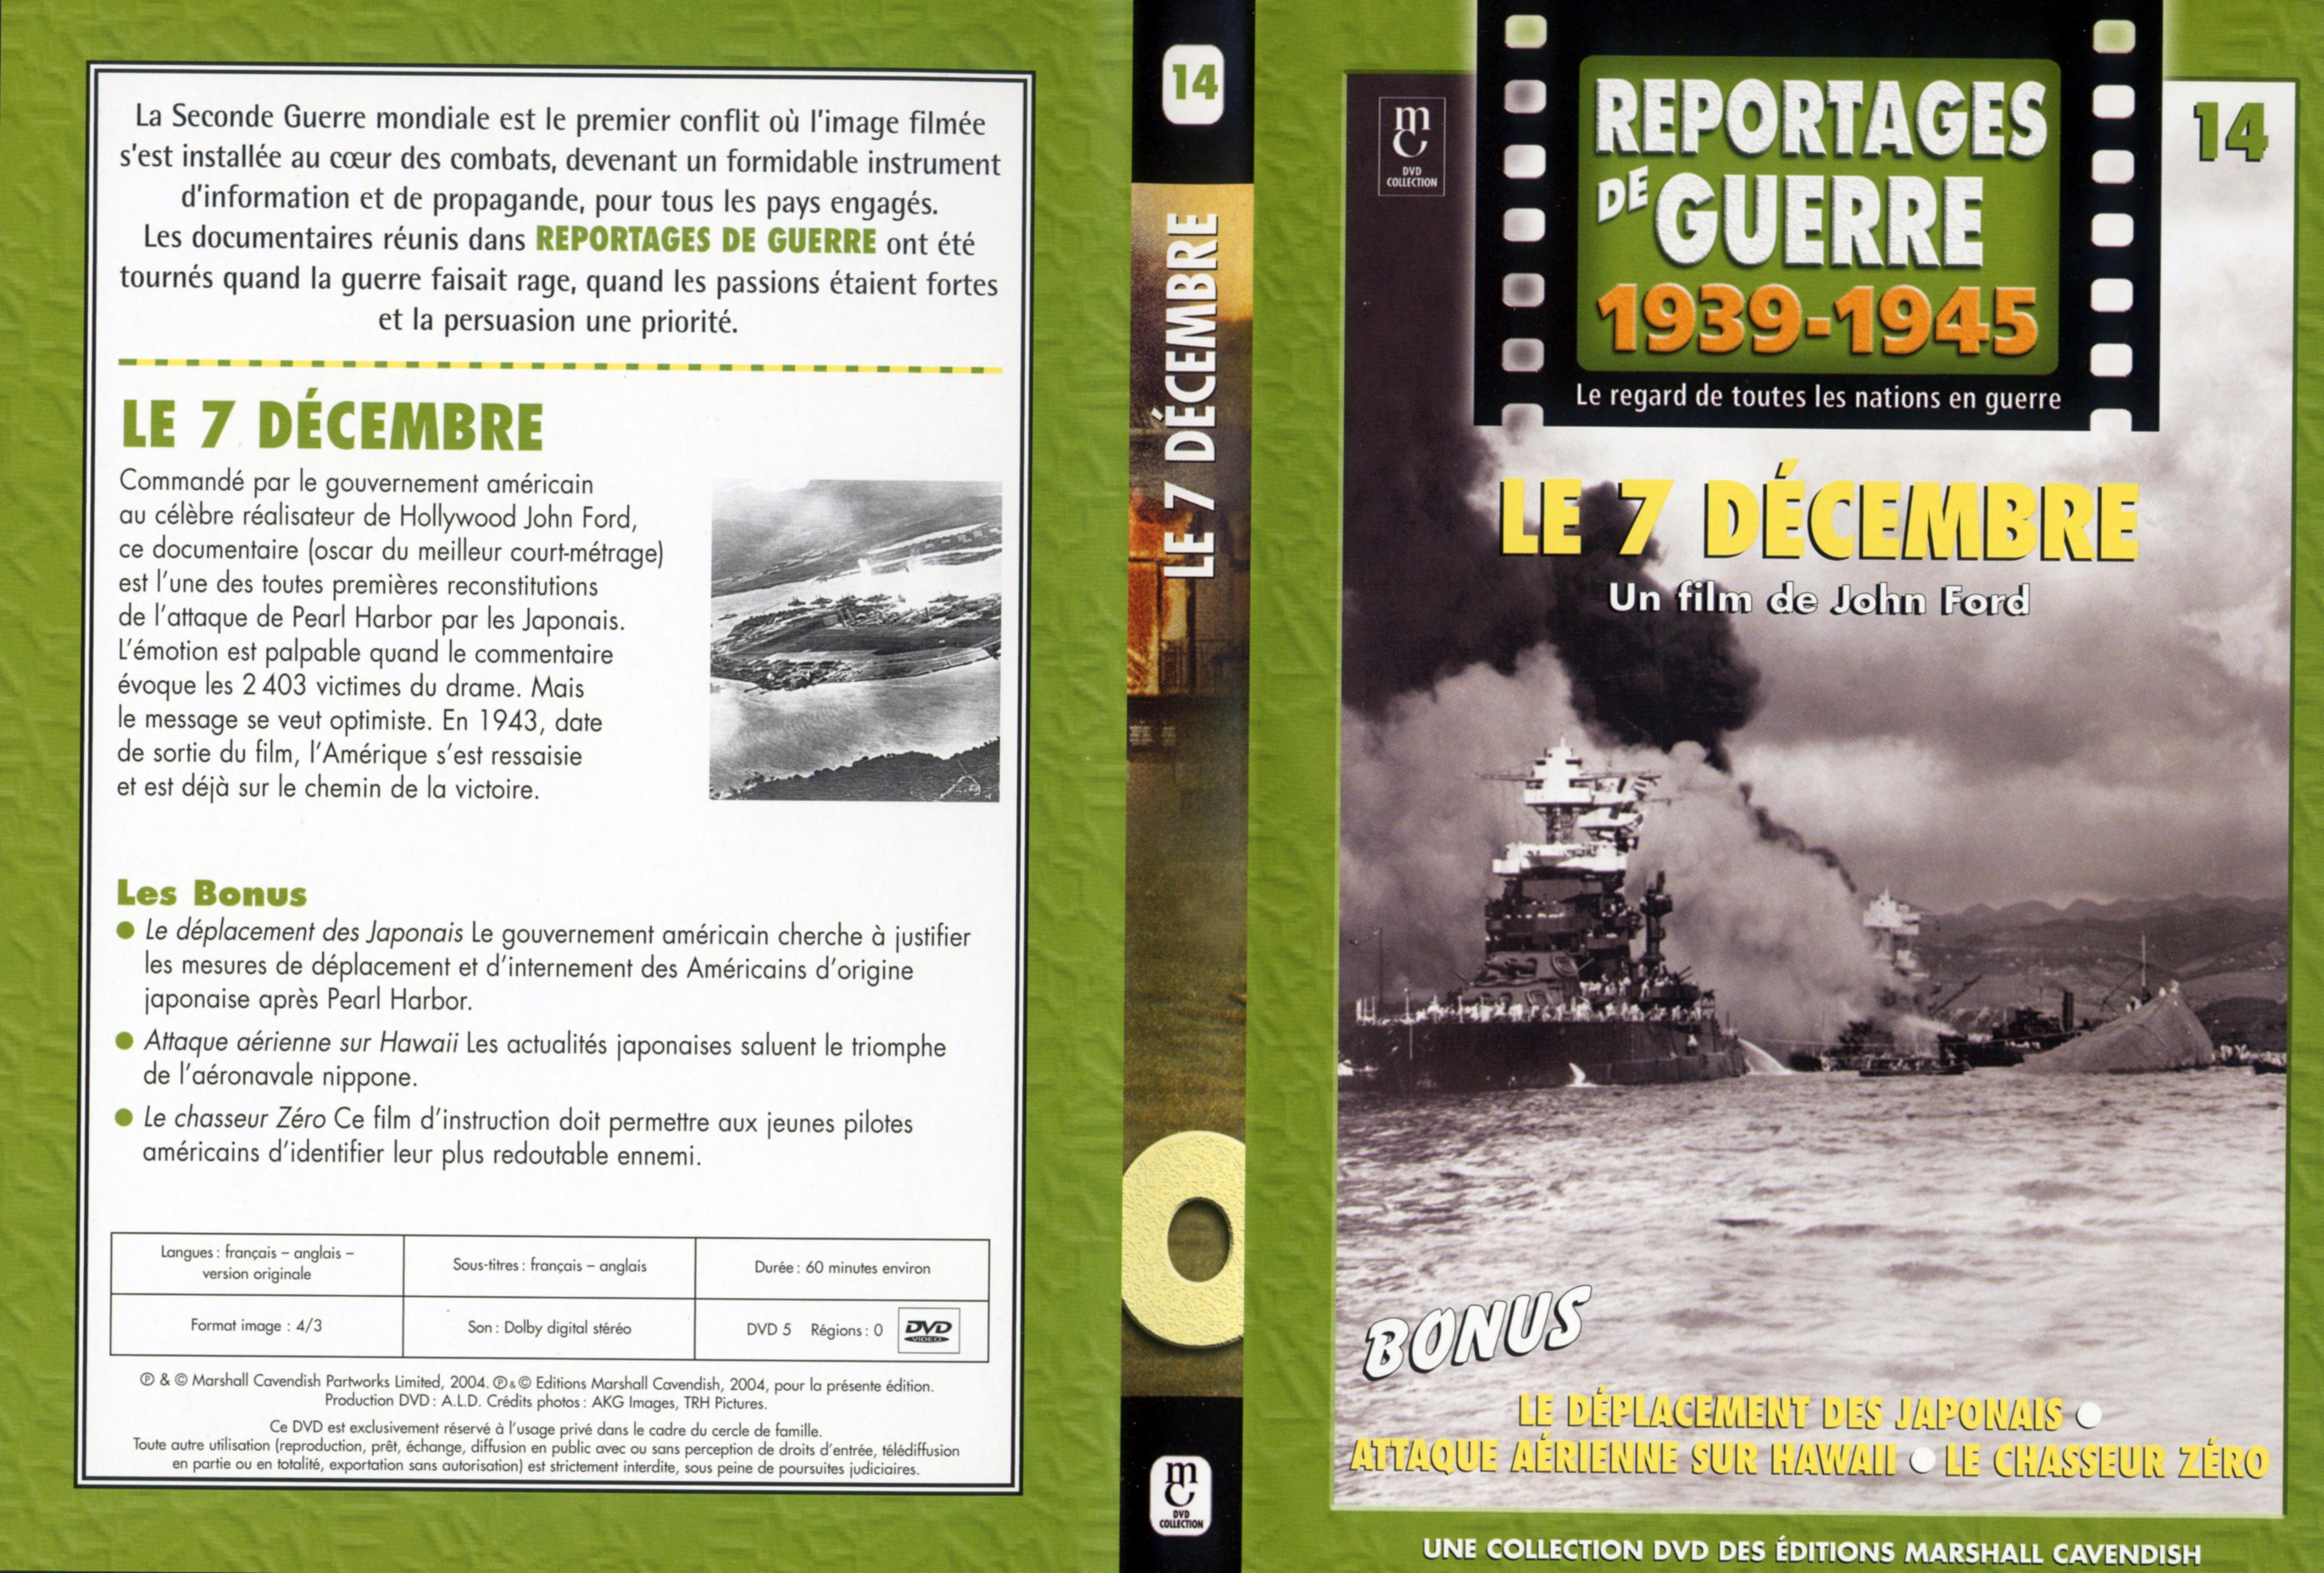 Jaquette DVD Reportages de guerre vol 14